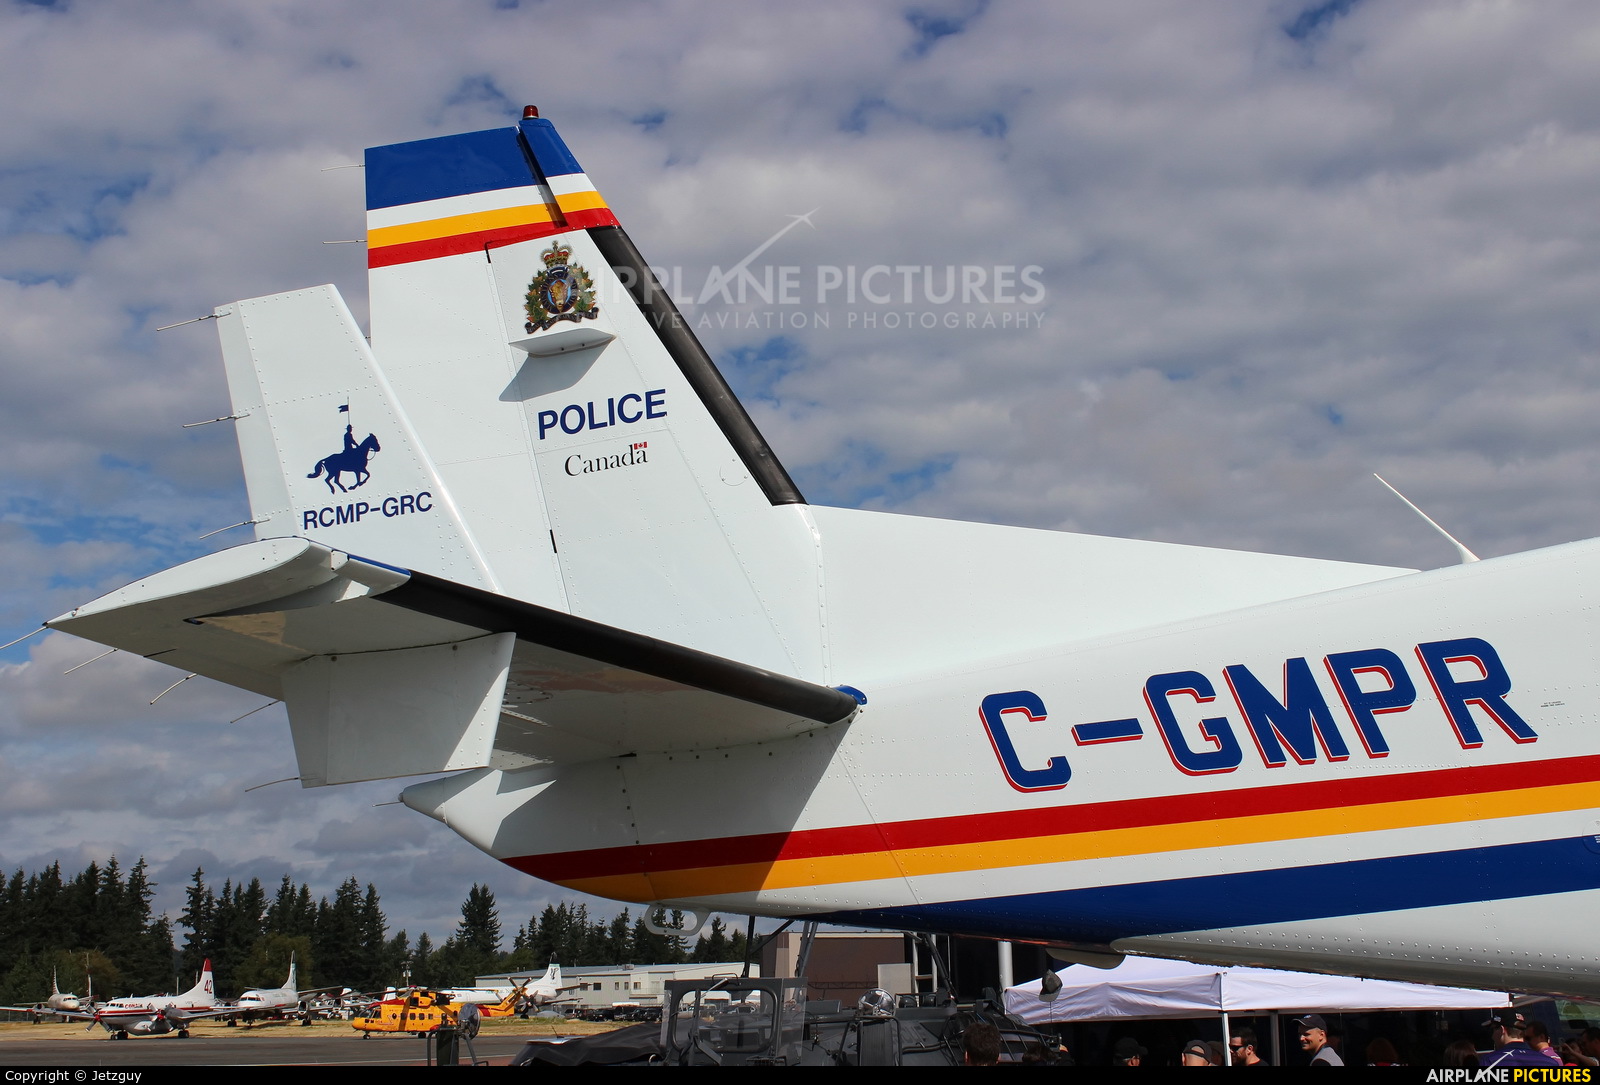 Canada-Royal Canadian Mounted Police C-GMPR aircraft at Abbotsford, BC